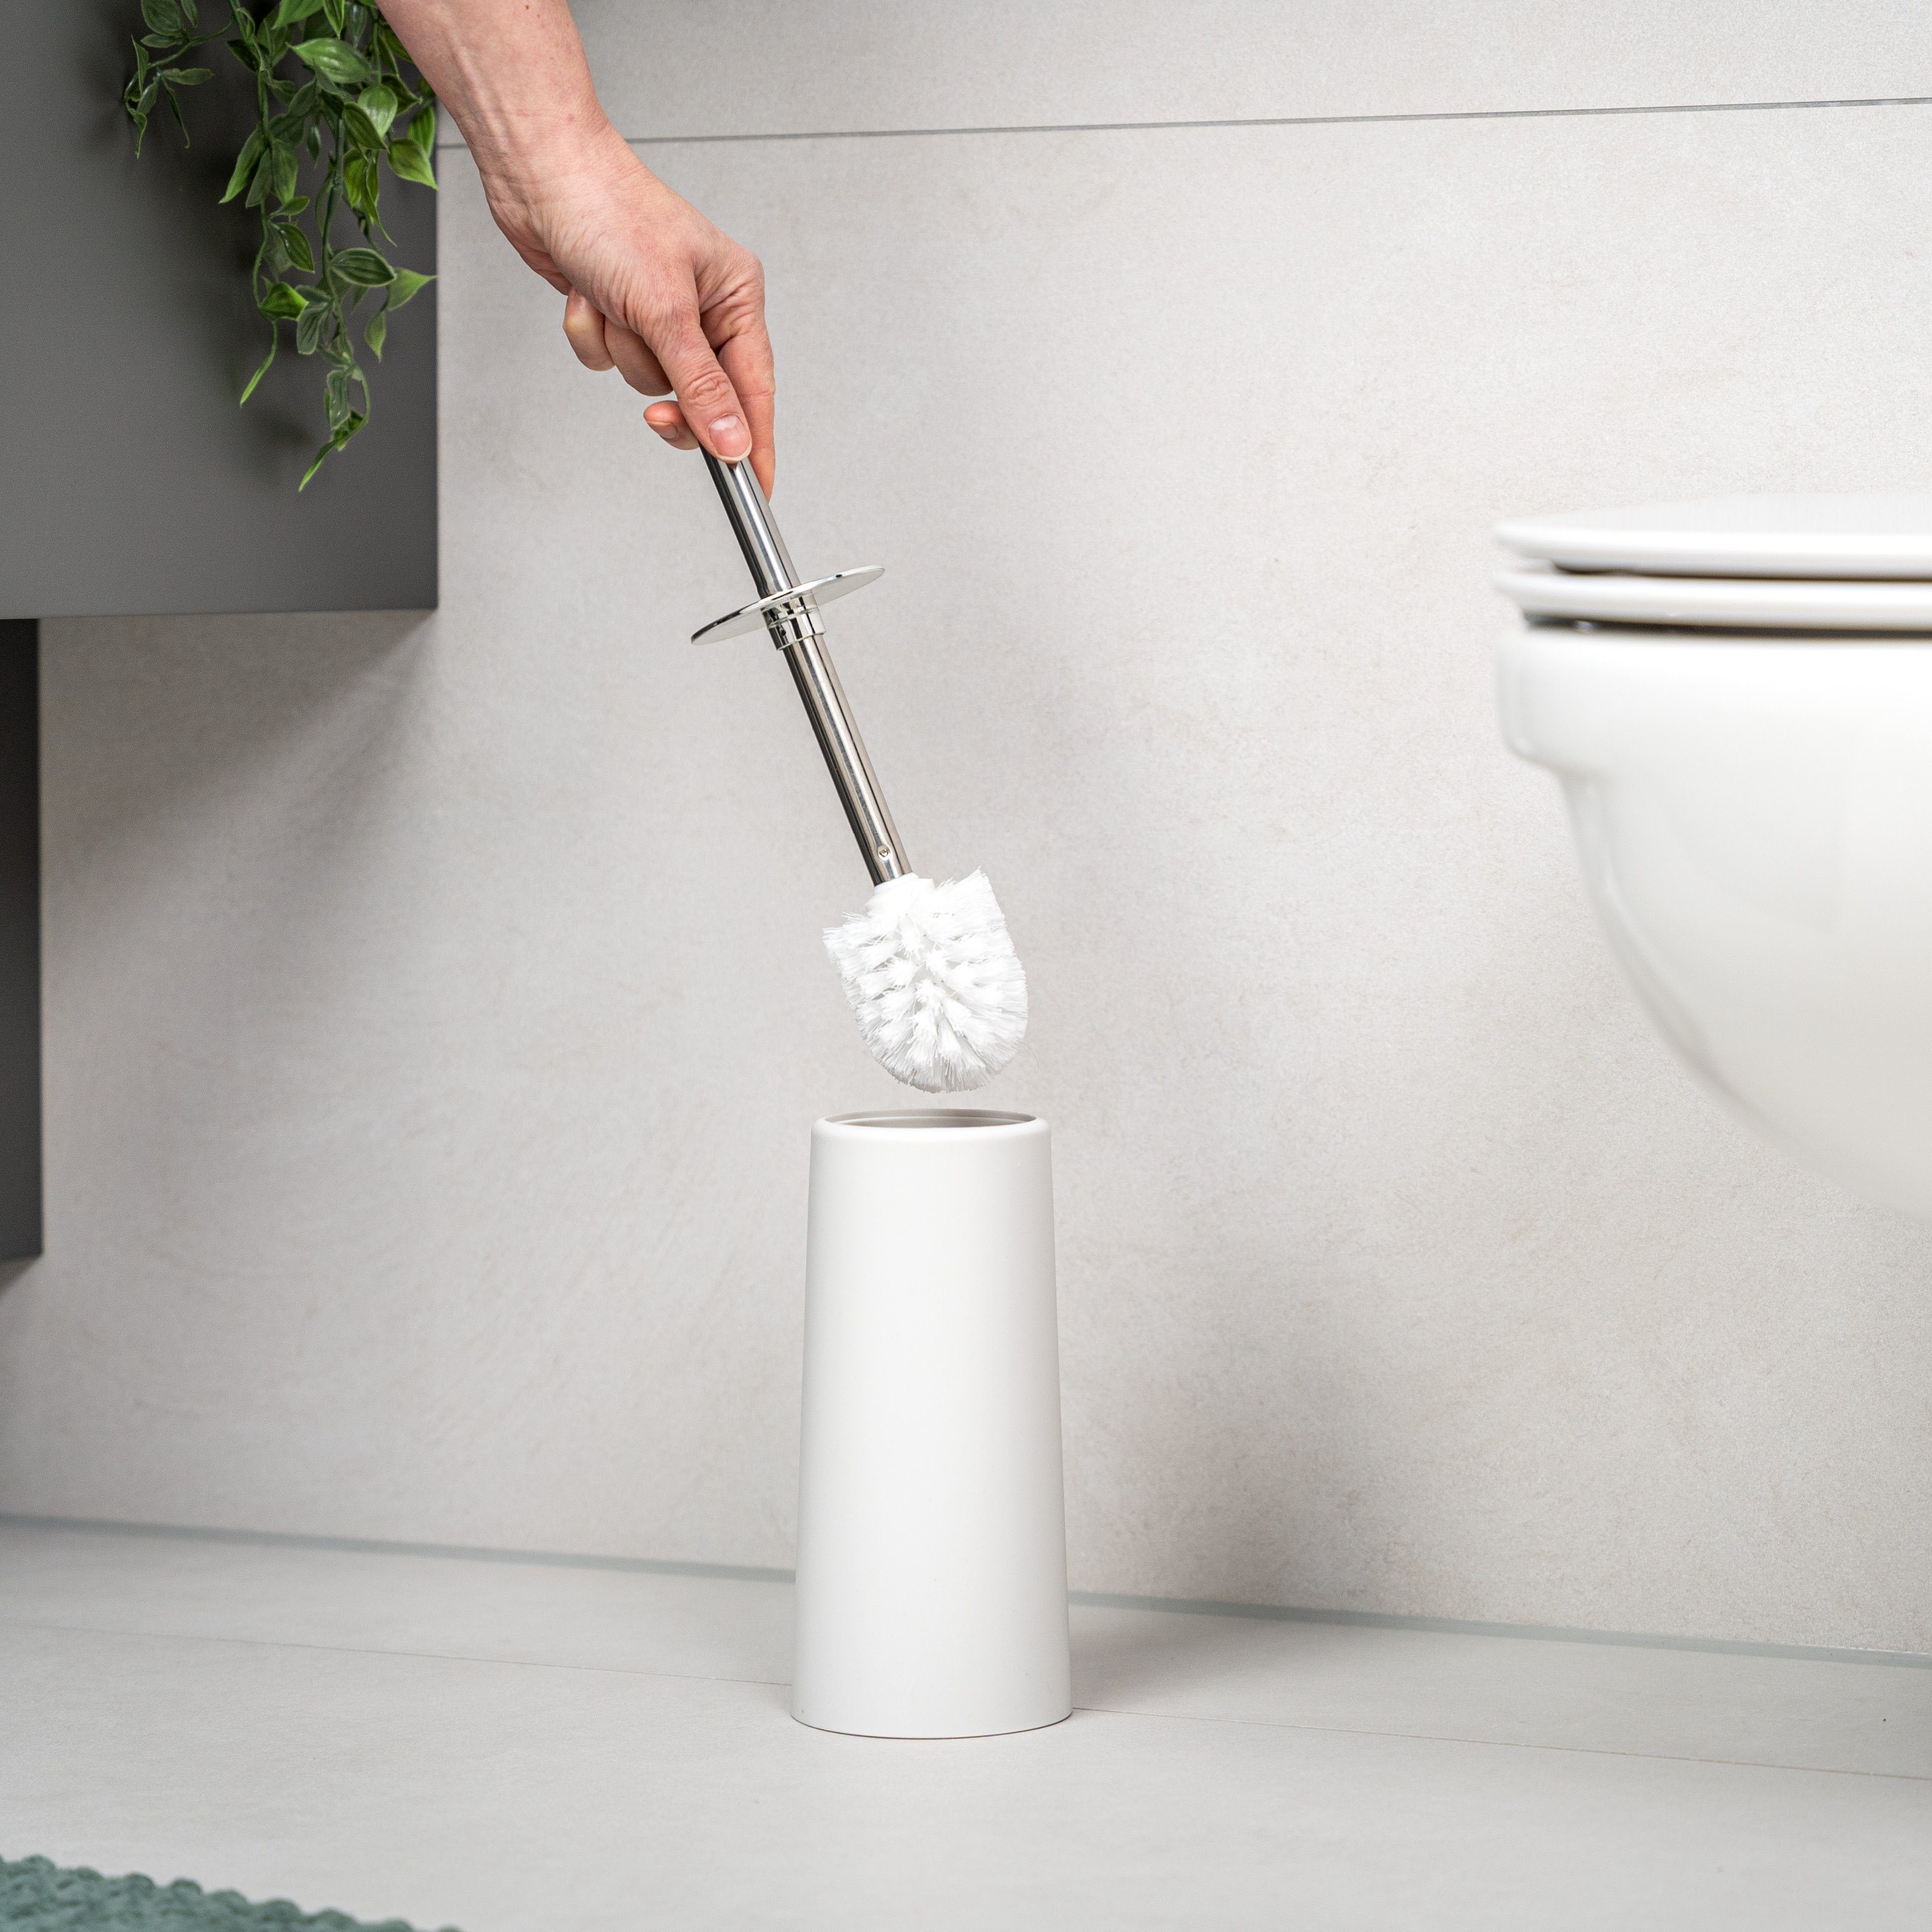 Set, bremermann WC-Reinigungsbürste Badezimmer, (kein Set) 2er weiß, jedes WC-Bürste bremermann